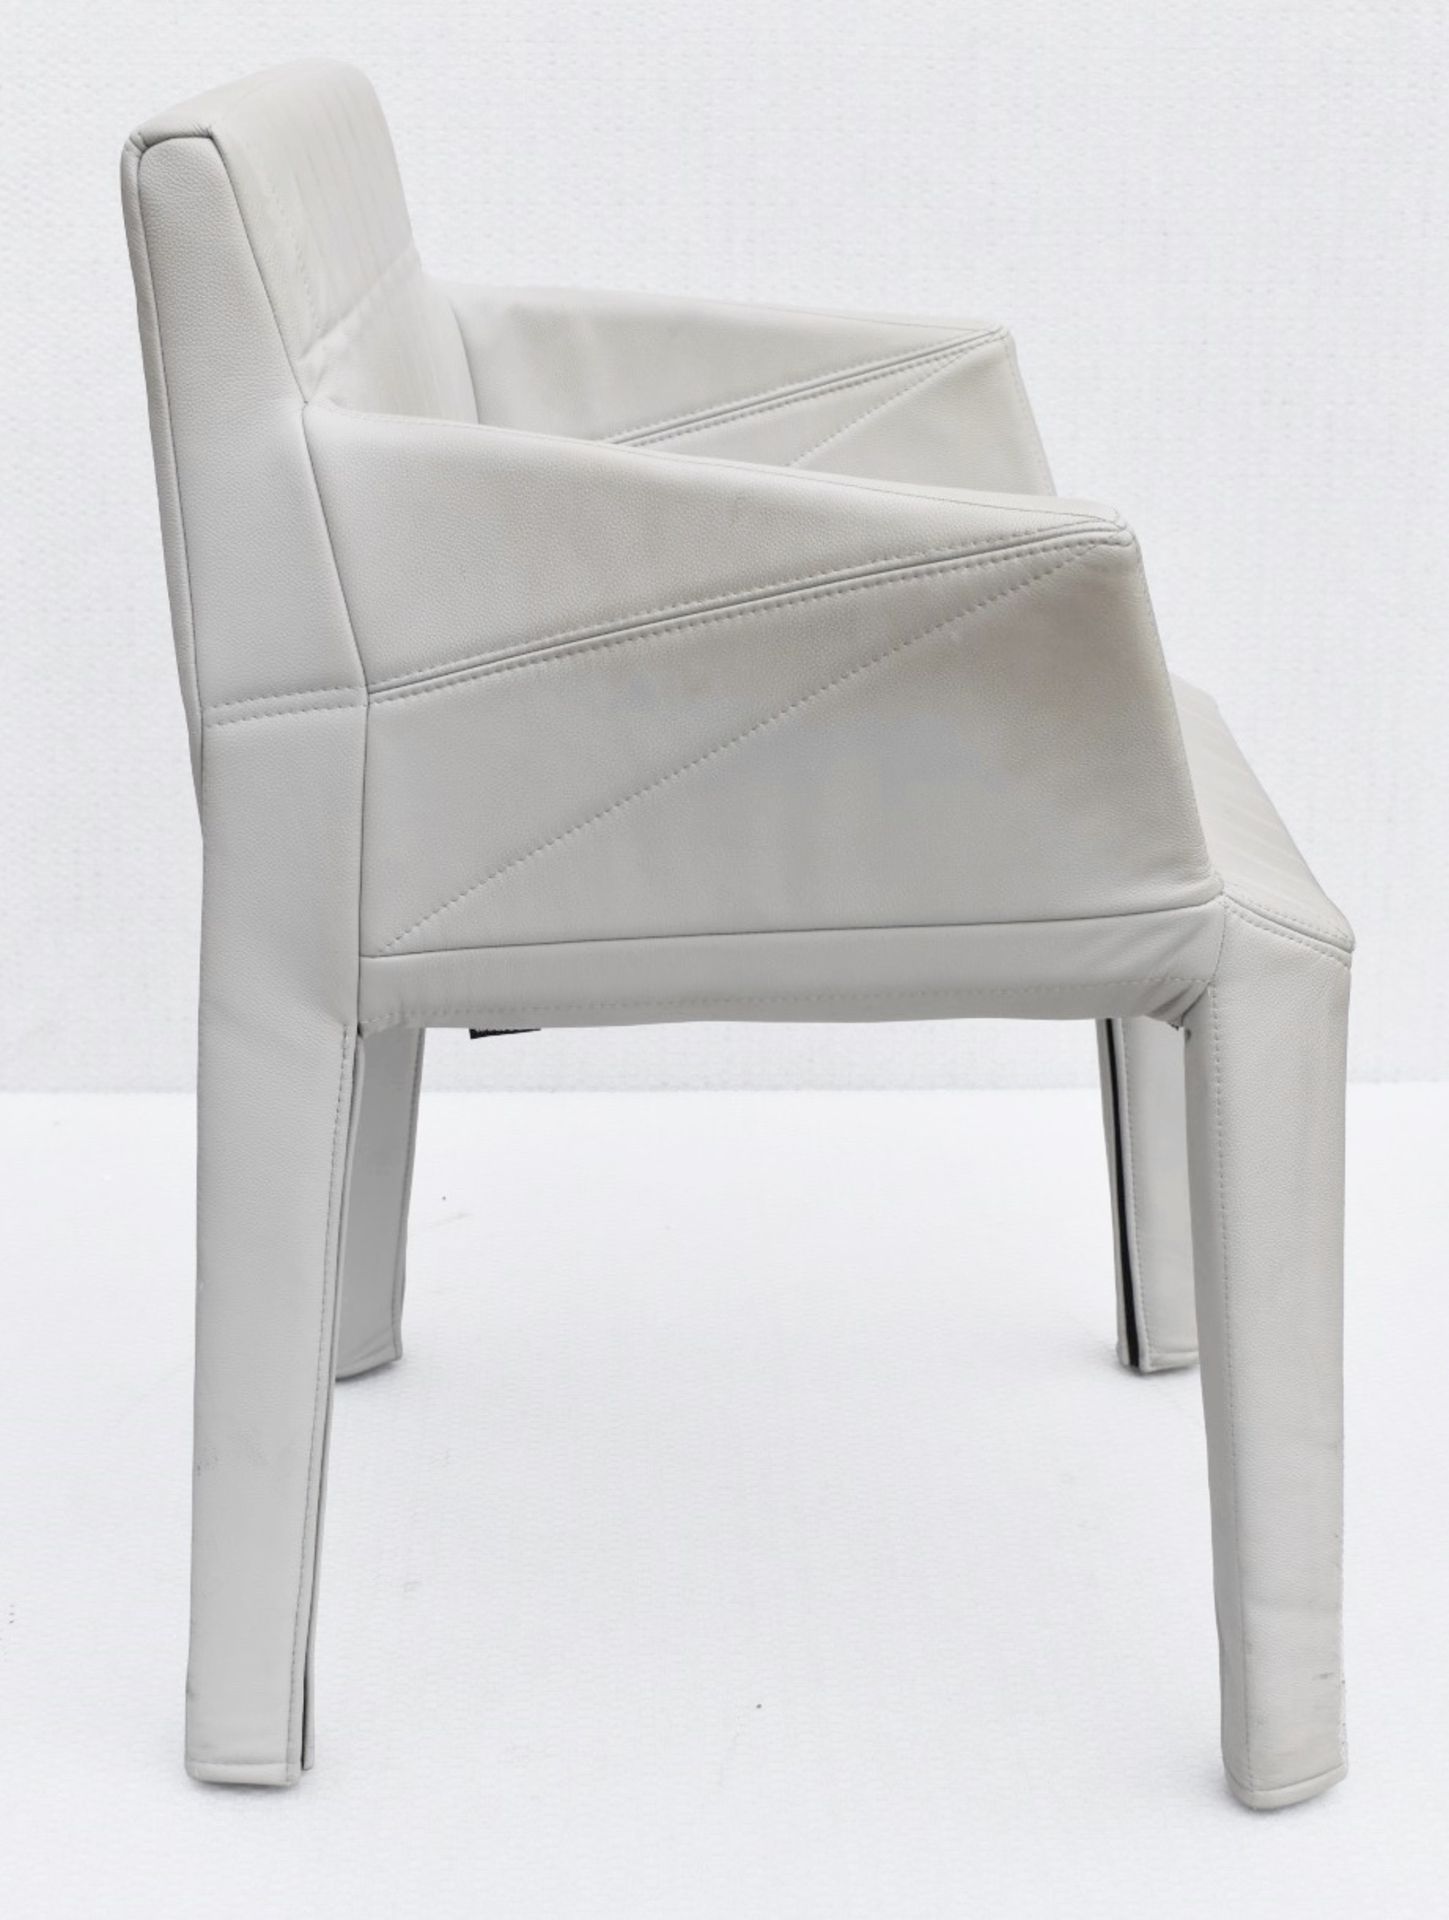 A Pair Of LIGNE ROSET 'Facett' Designer Carver Chairs - Total Original Price £2,432 - Image 2 of 12